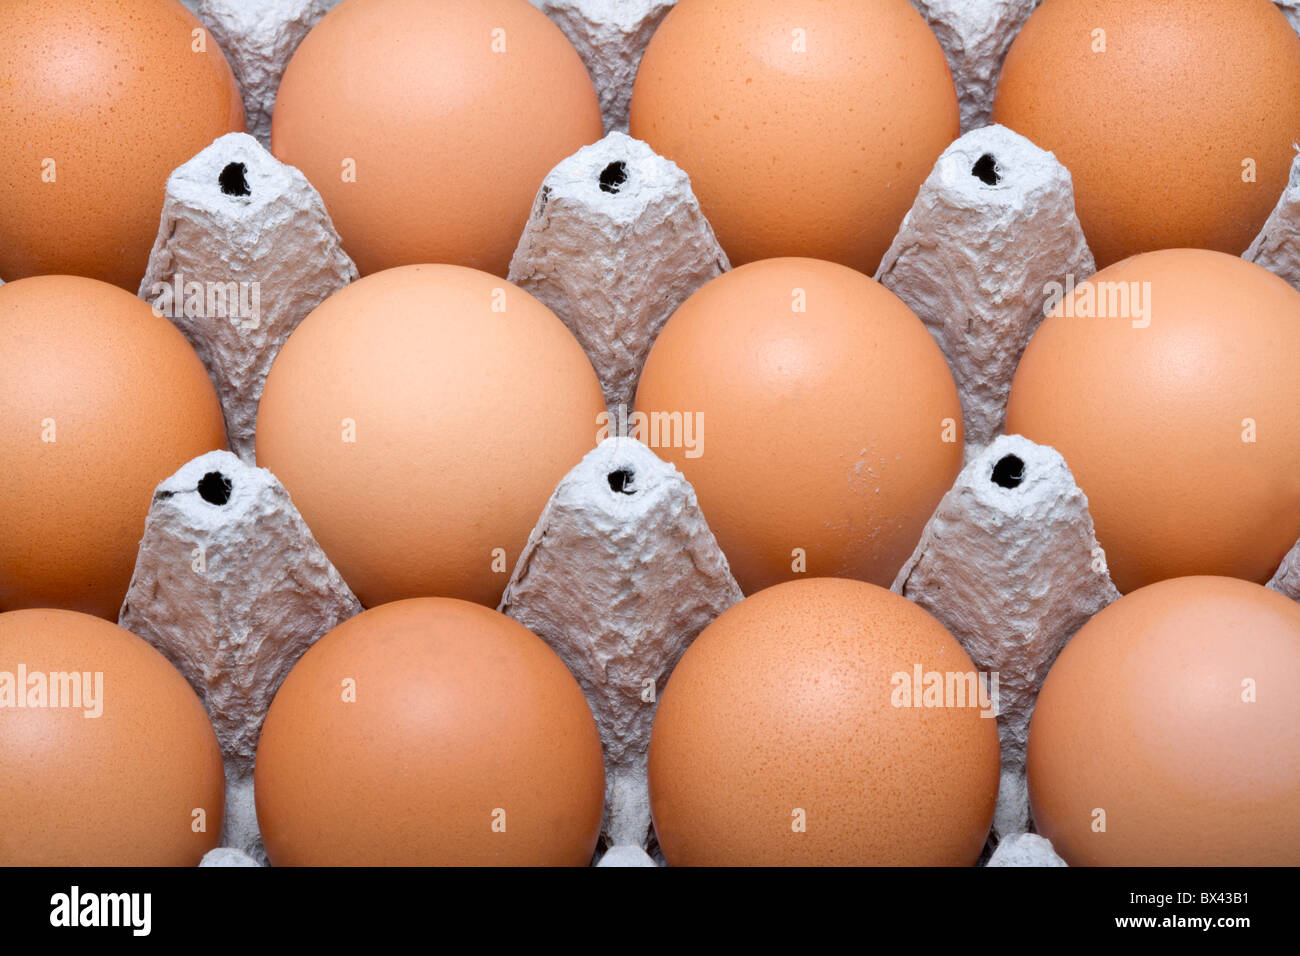 brown eggs hen egg raw carton food Stock Photo